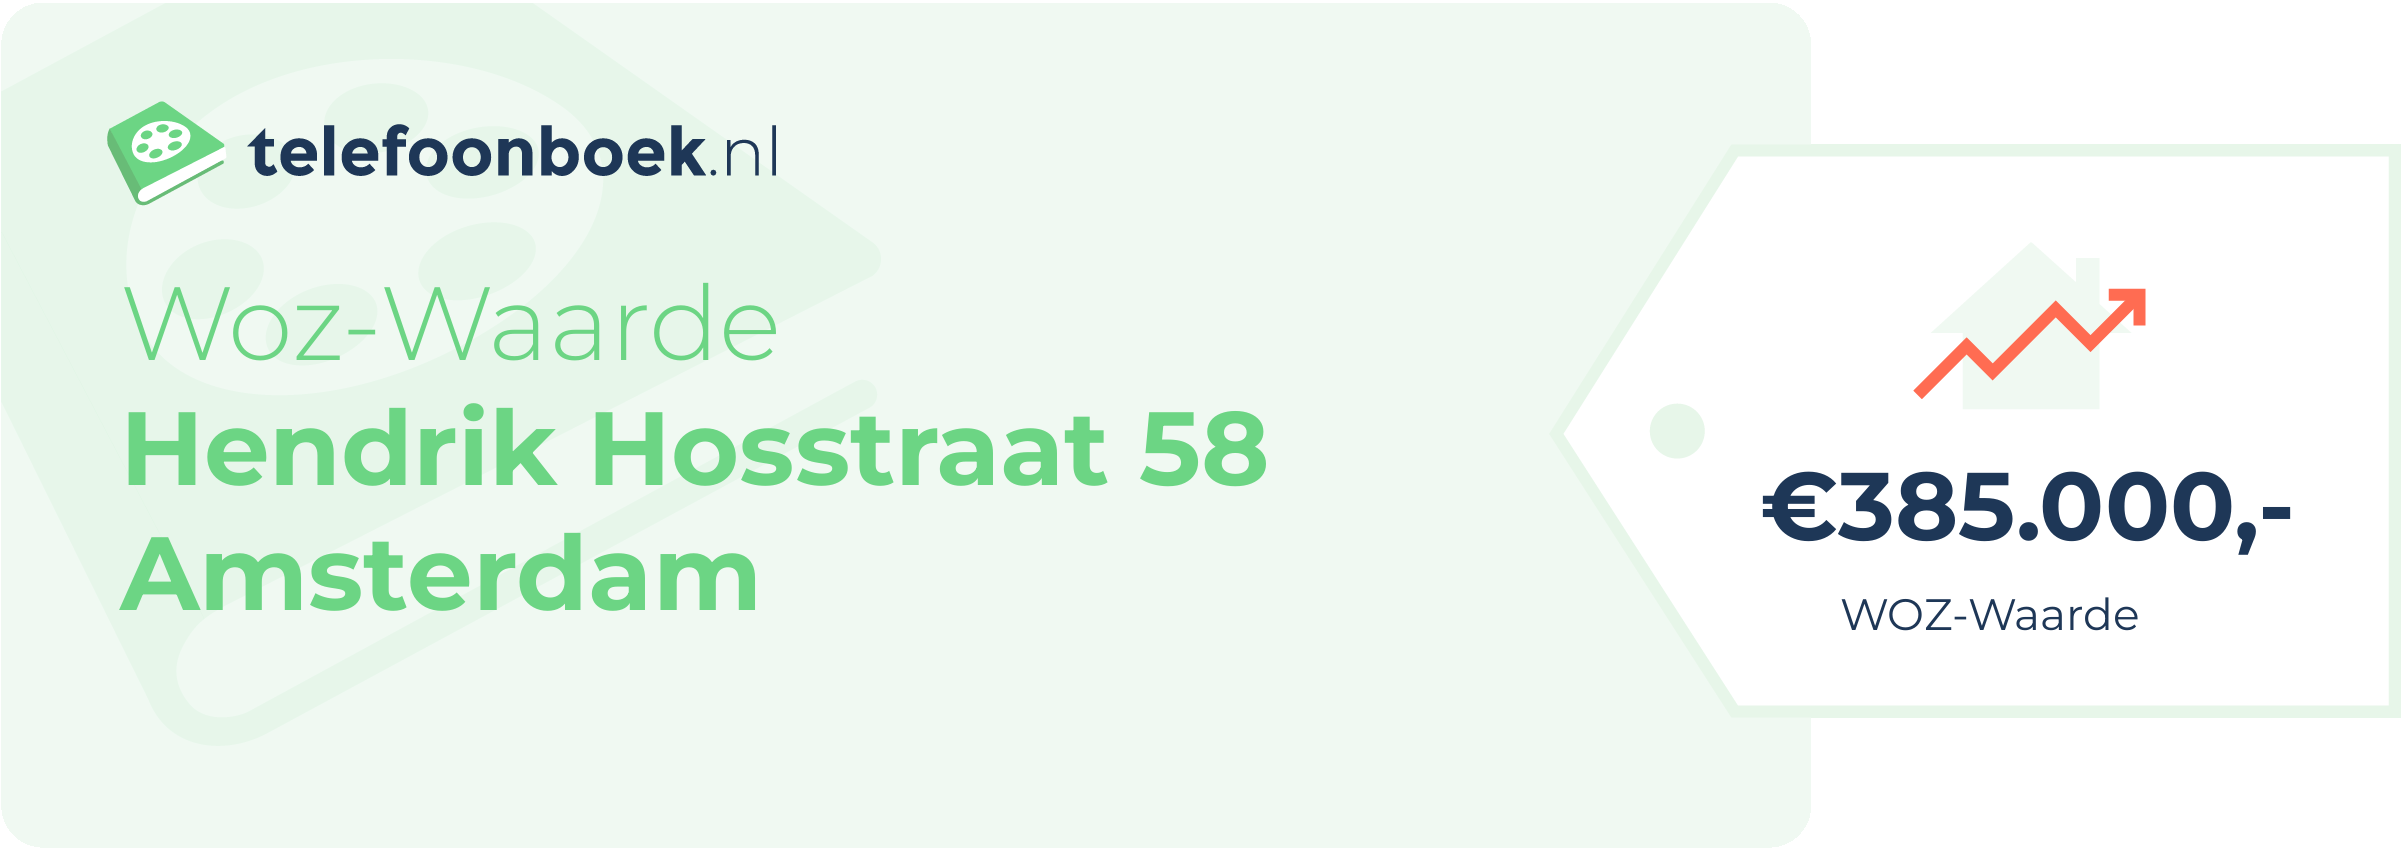 WOZ-waarde Hendrik Hosstraat 58 Amsterdam